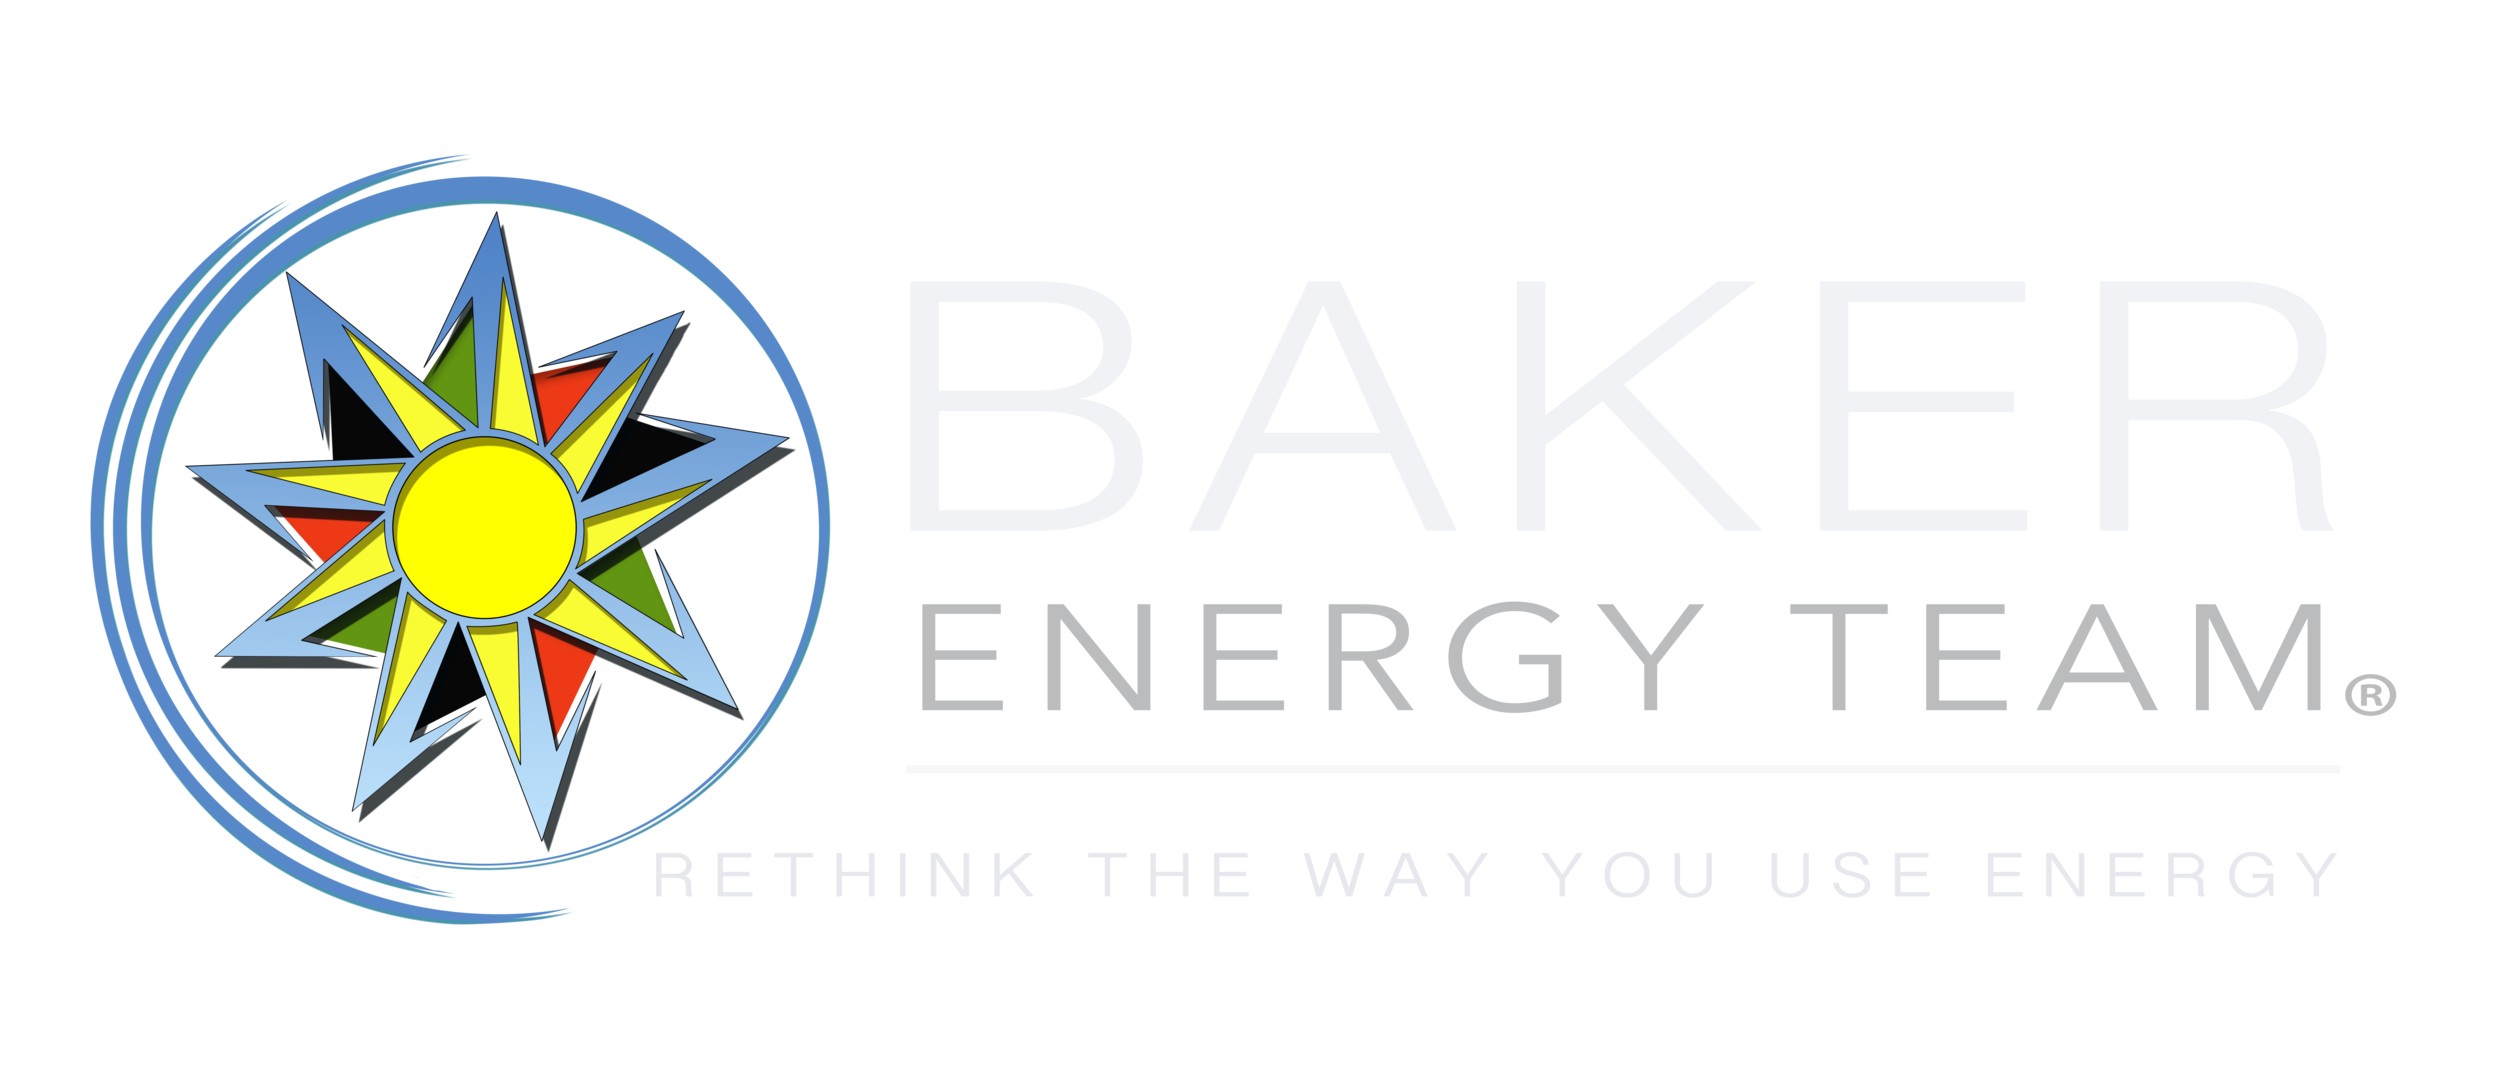 Baker Energy Team